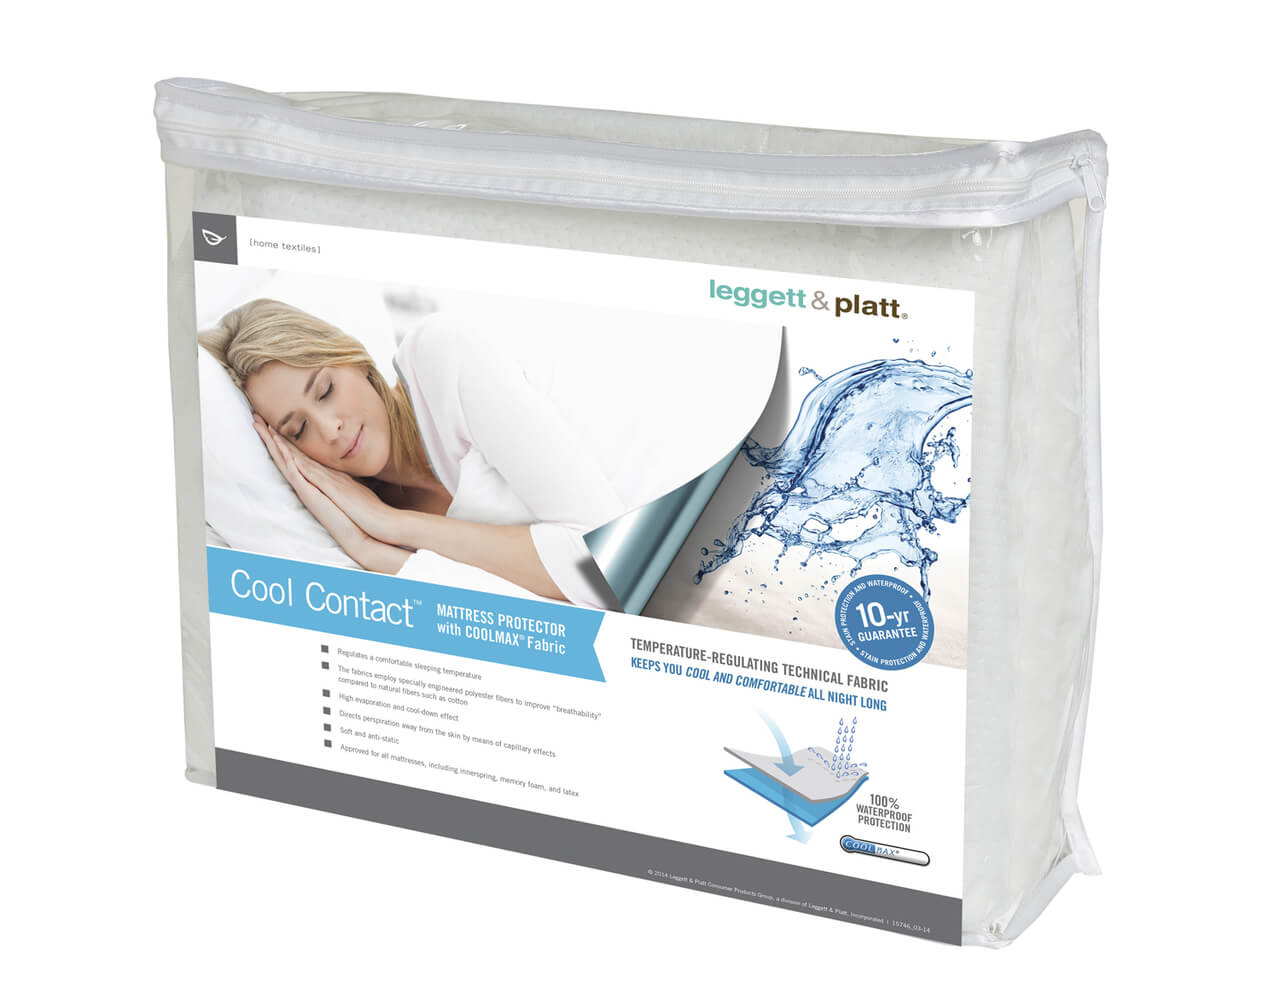 leggett & platt cool contact mattress protector with cool